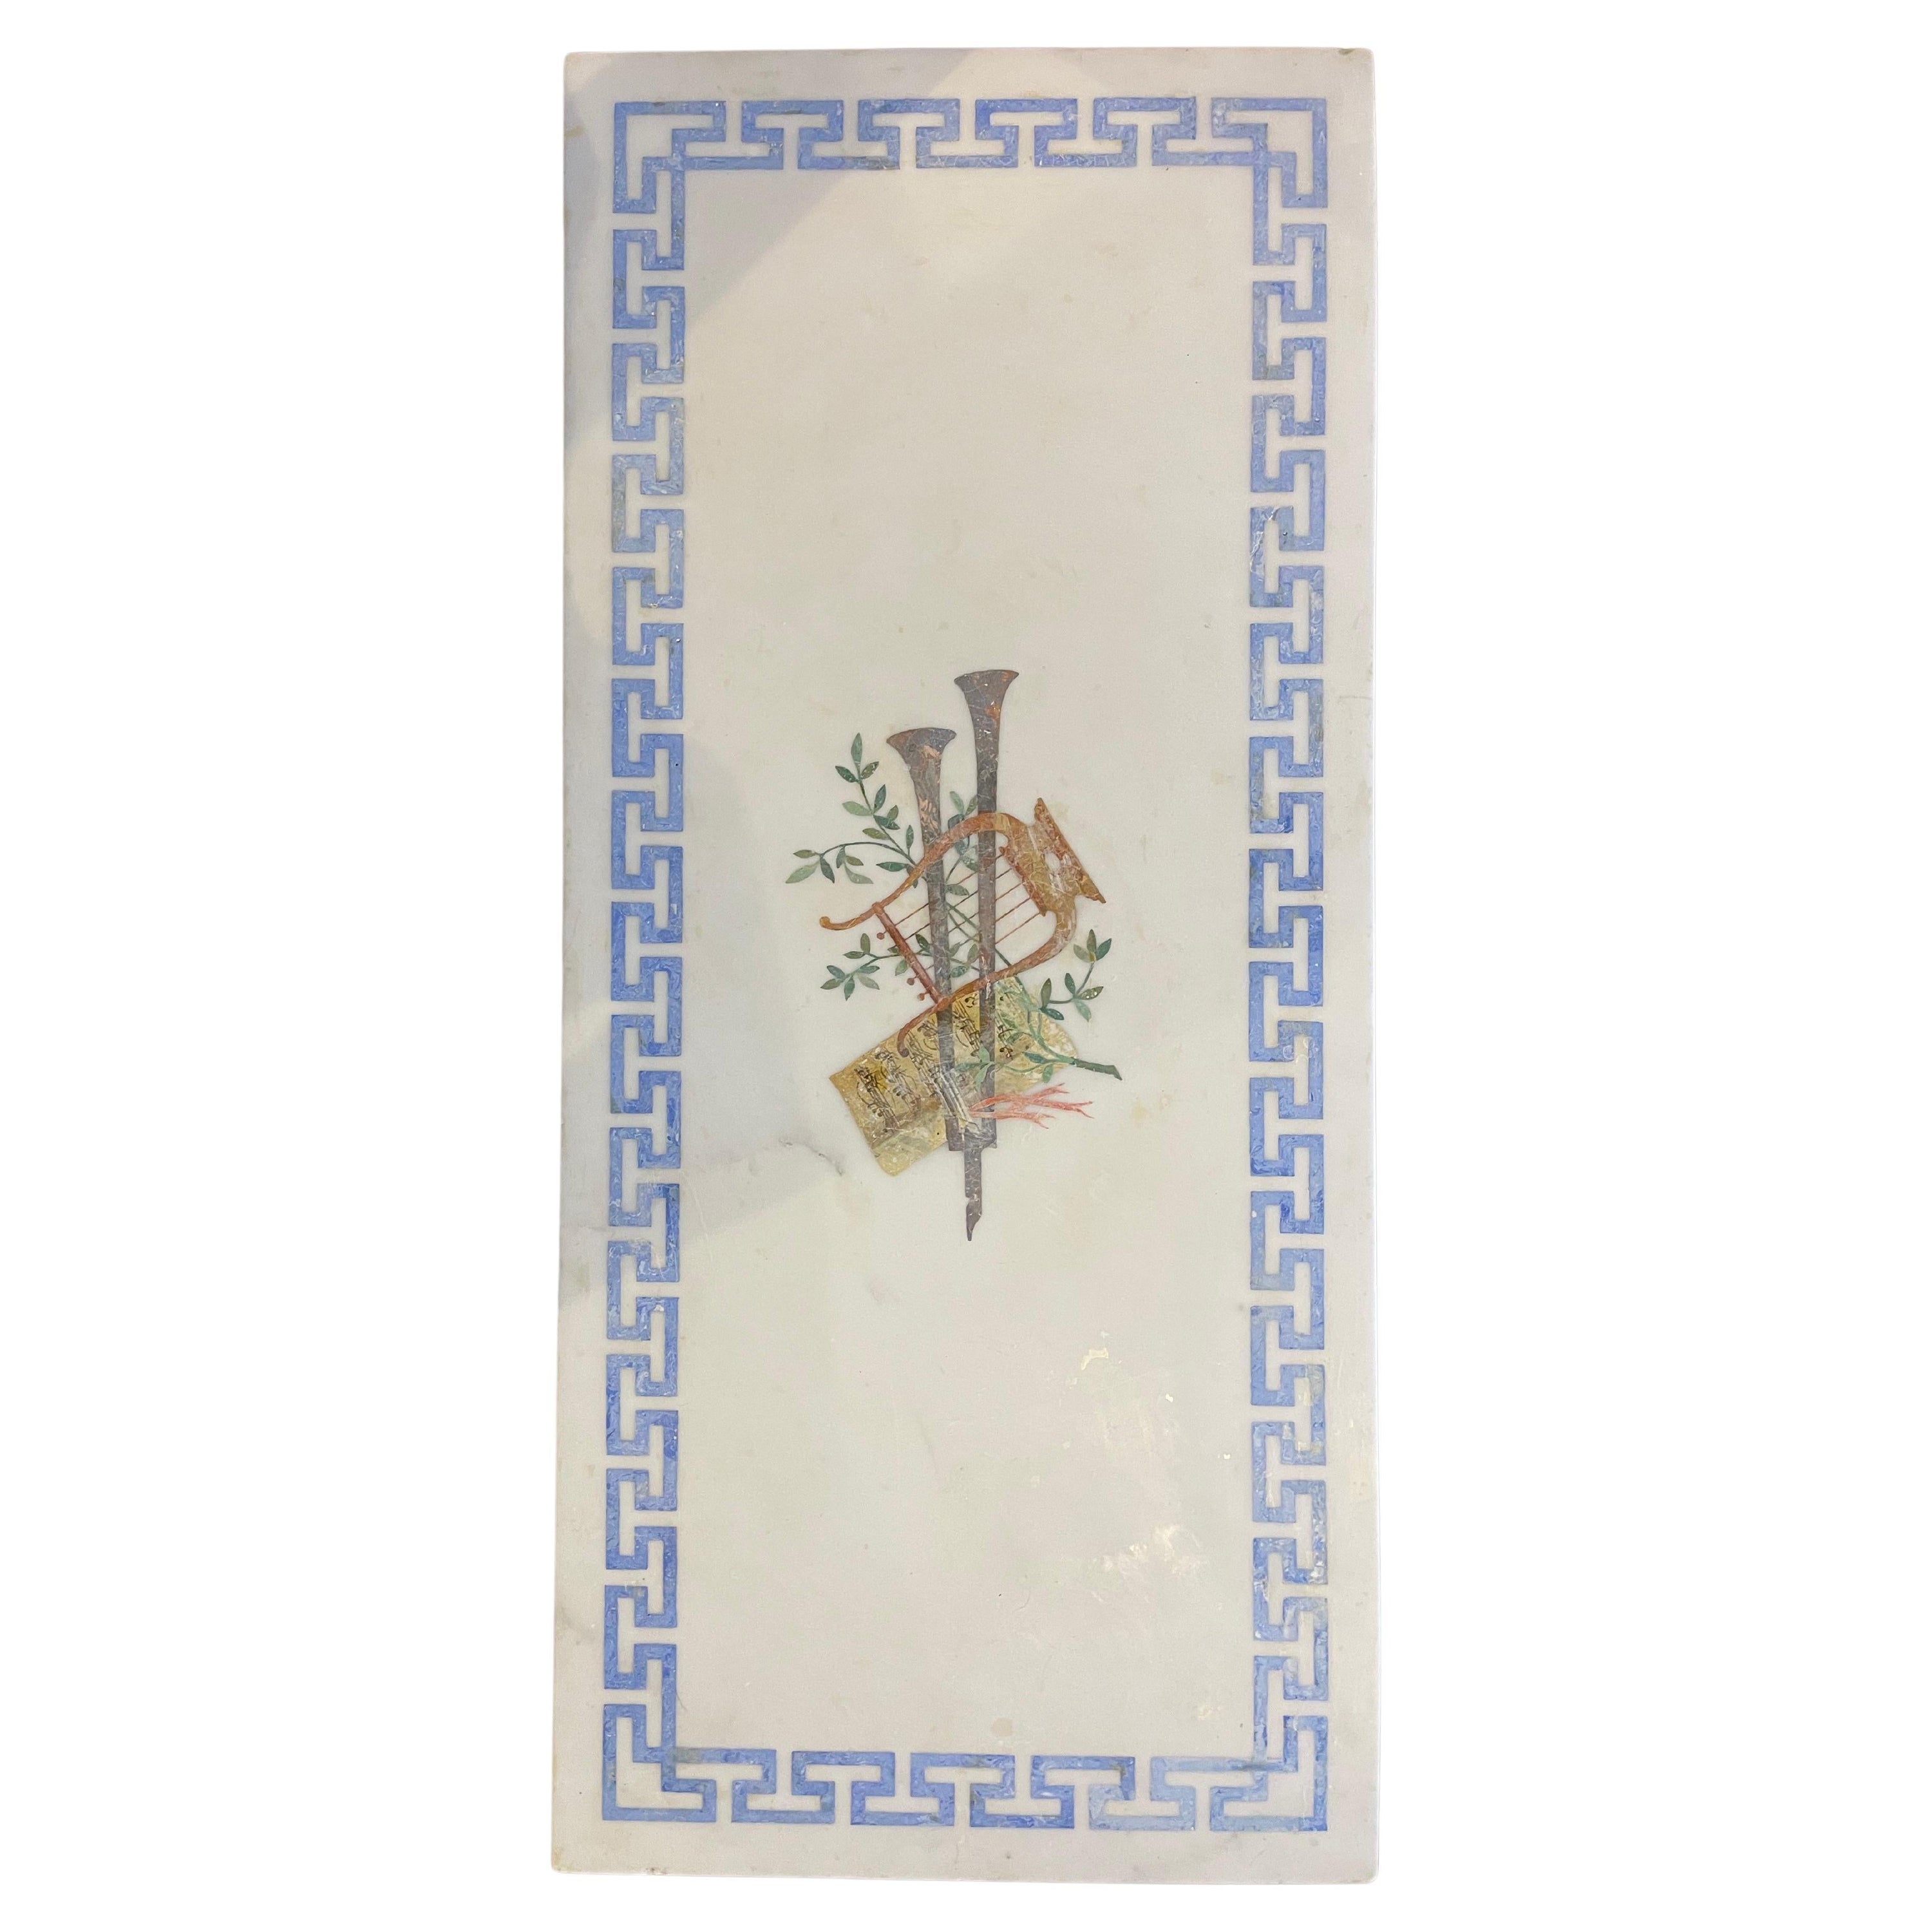 Couchtisch mit weißer Marmorplatte und vergoldeter Platte, griechischer Schlüssel und dekorativer Intarsien